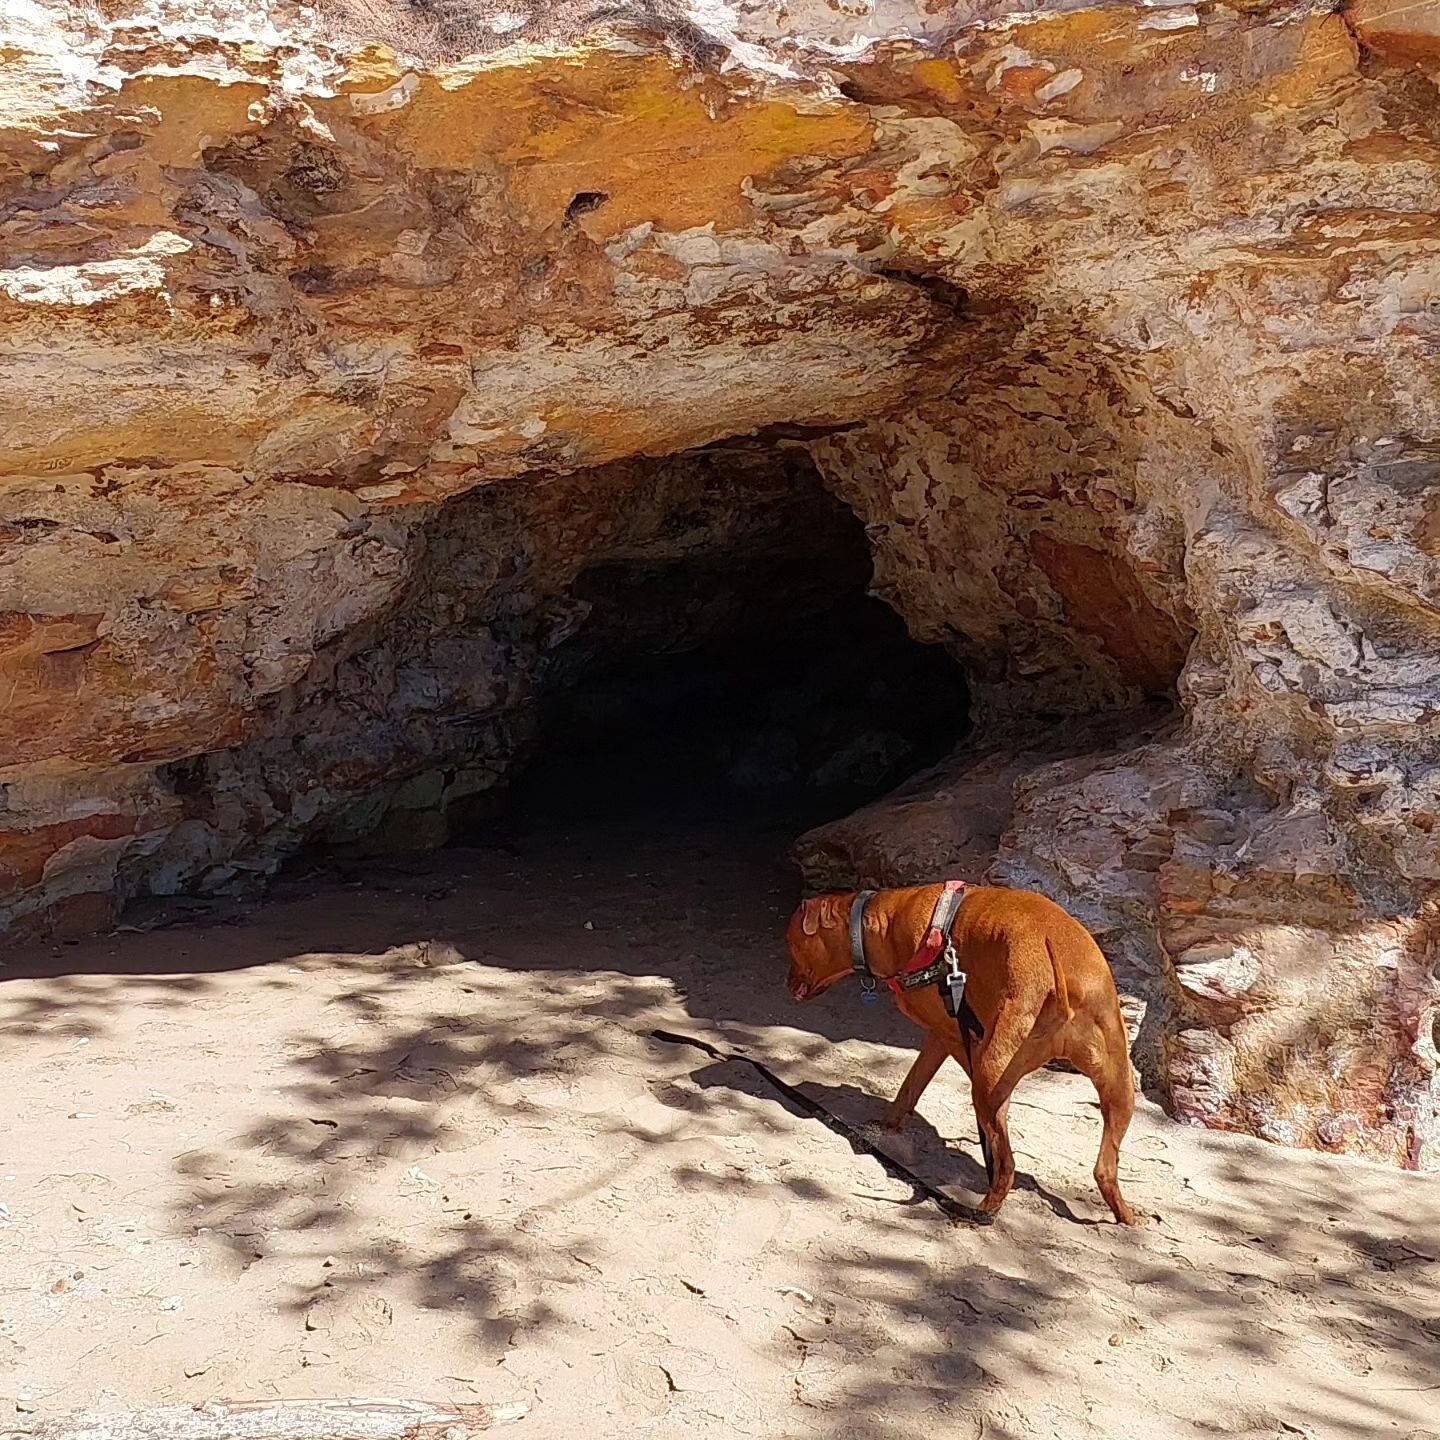 Casuarina dog Beach Darwin.